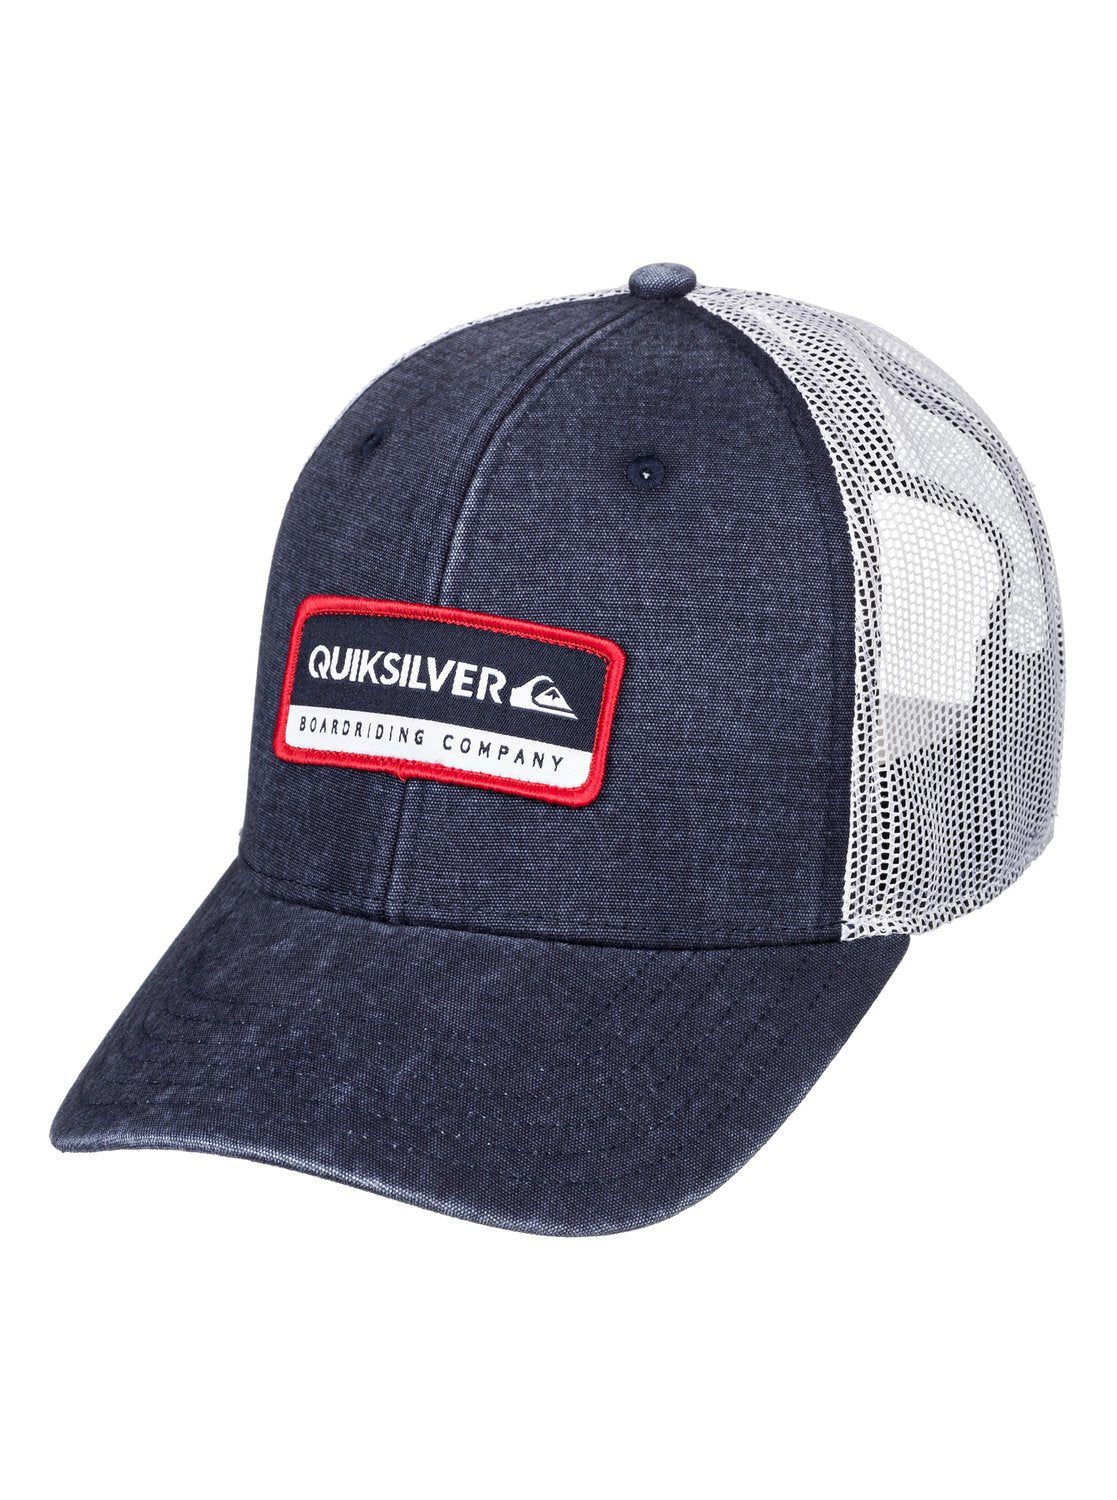 Quiksilver Rinsed Trucker Hat